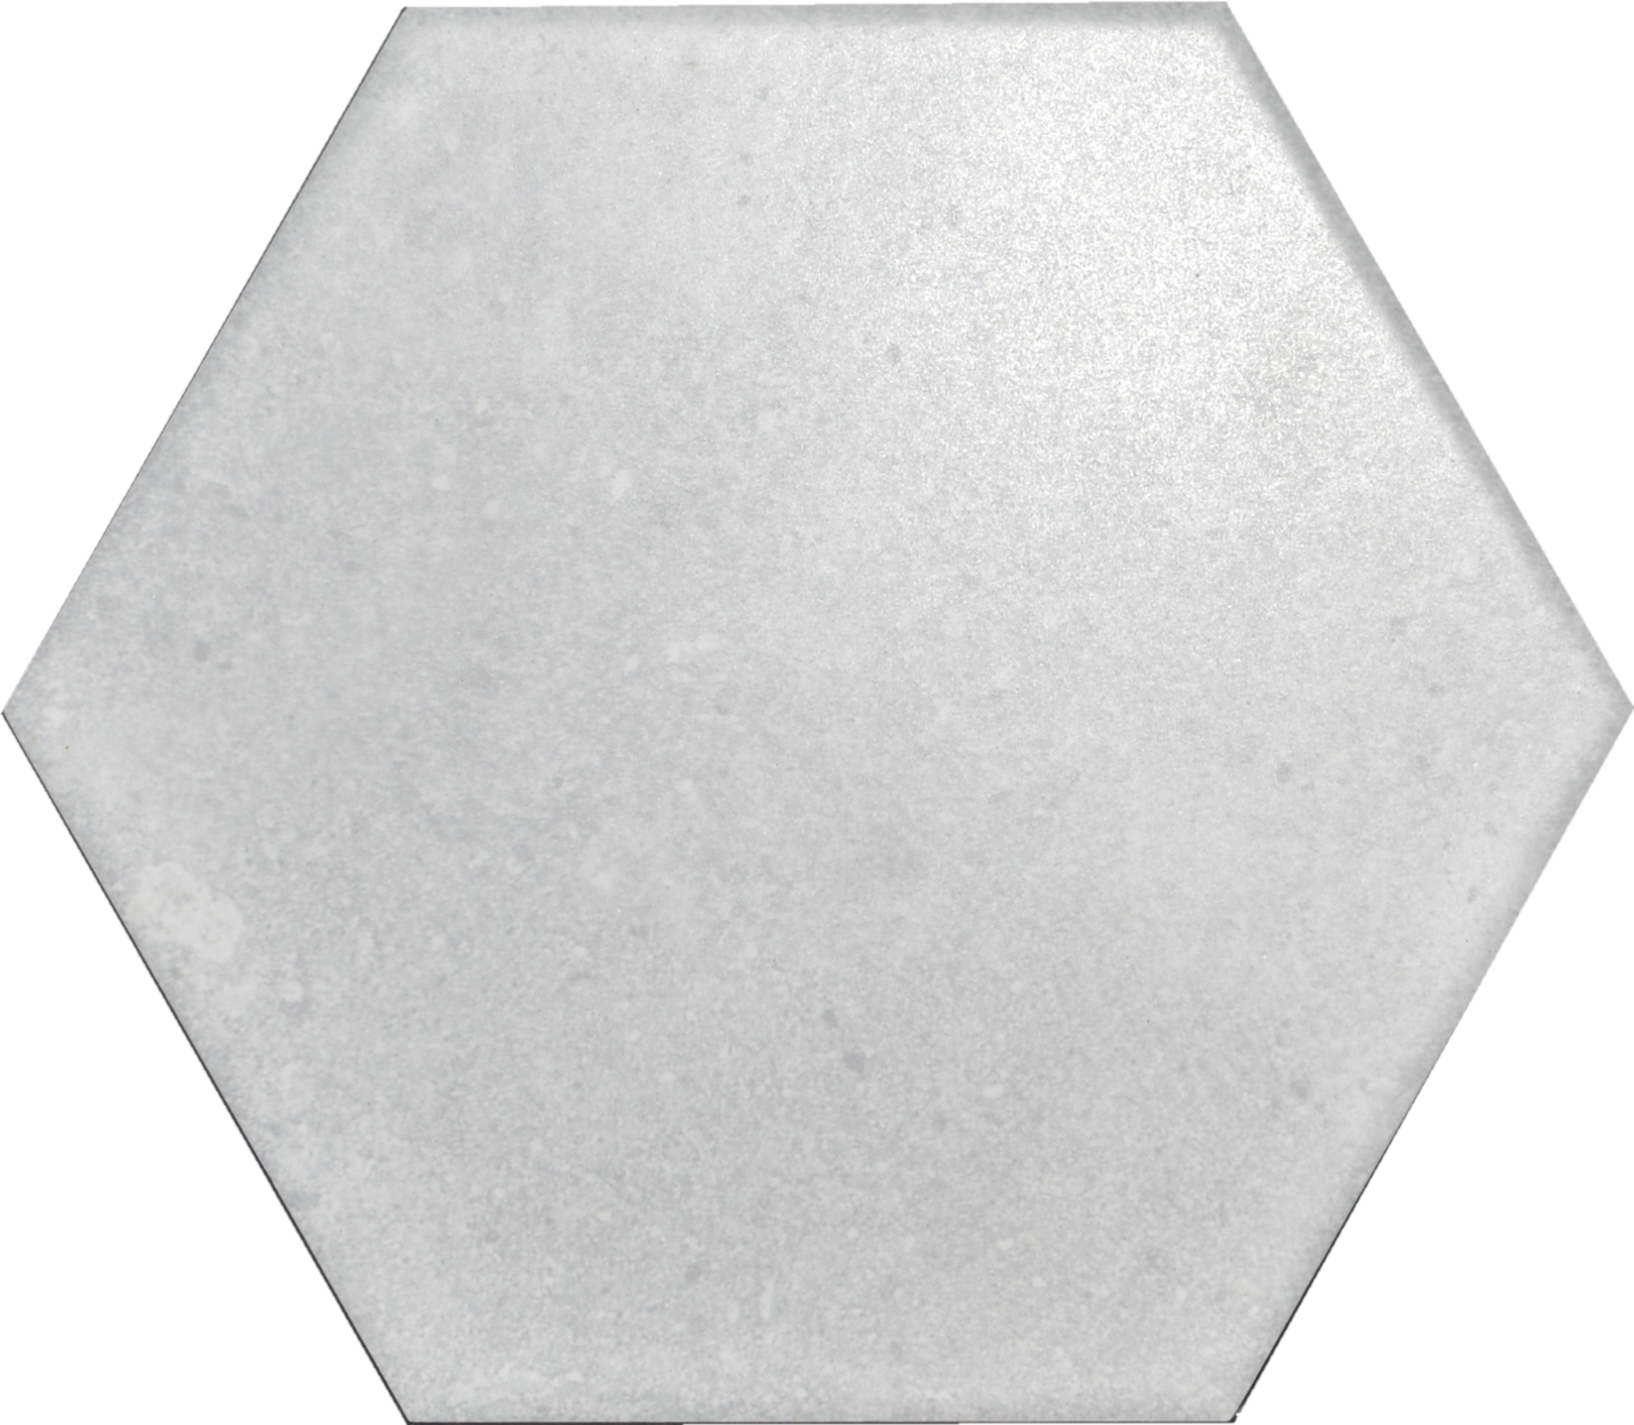 Hexagon Glazed Porcelain Tile (K2202-1)